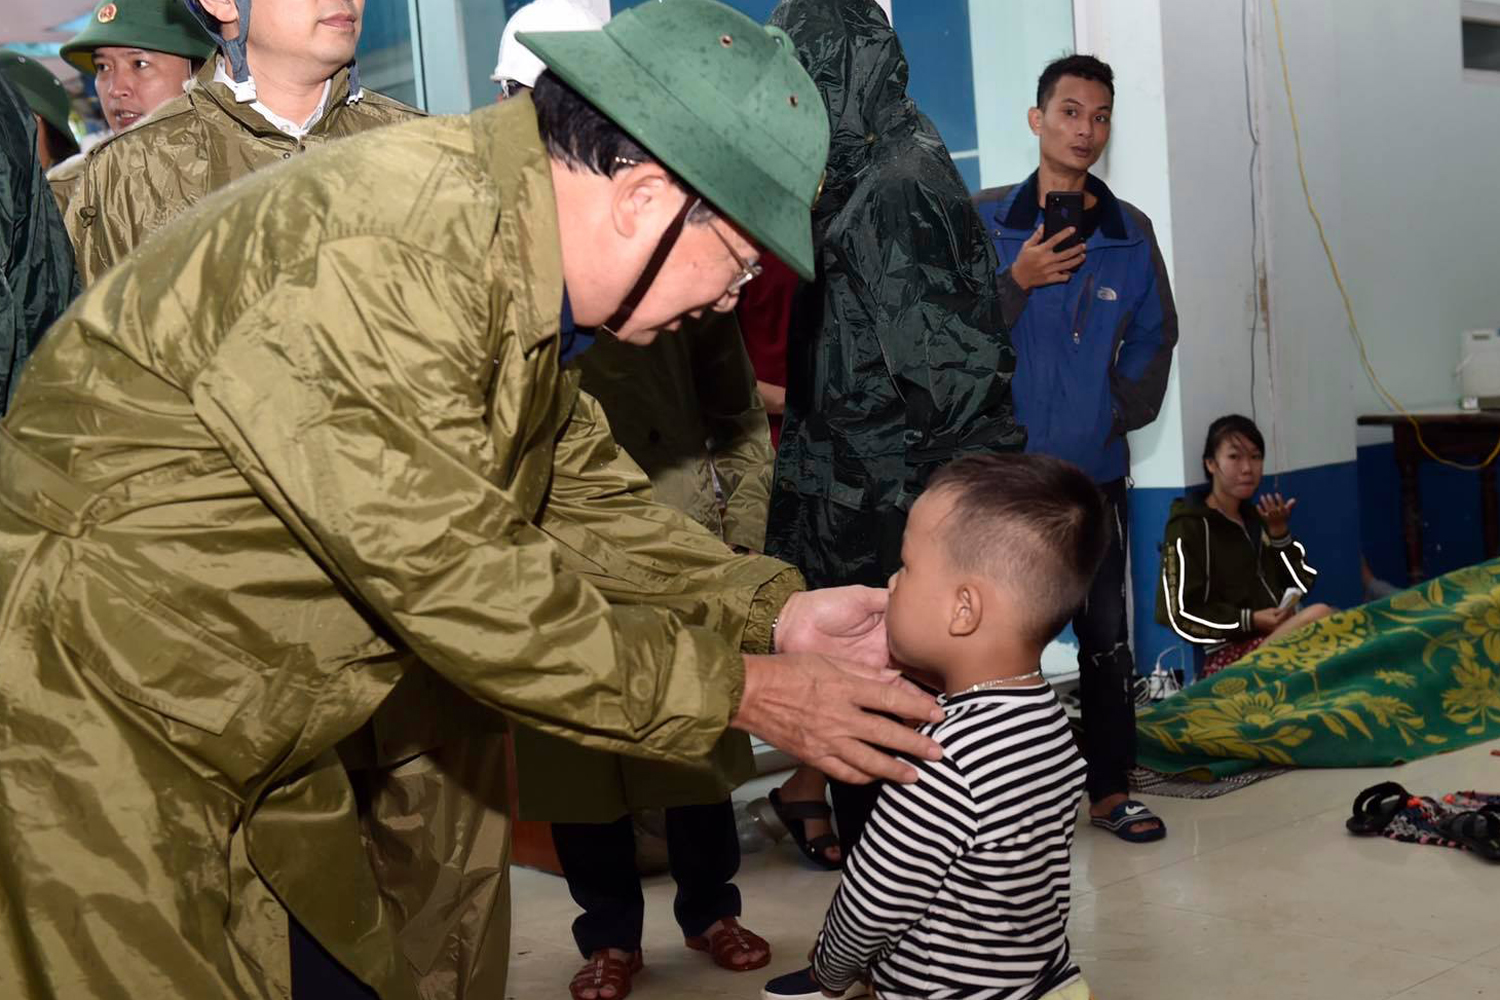 Phó Thủ tướng Trịnh Đình Dũng: Tình hình khẩn cấp, không quyết liệt ứng phó thì vô cùng nguy hiểm